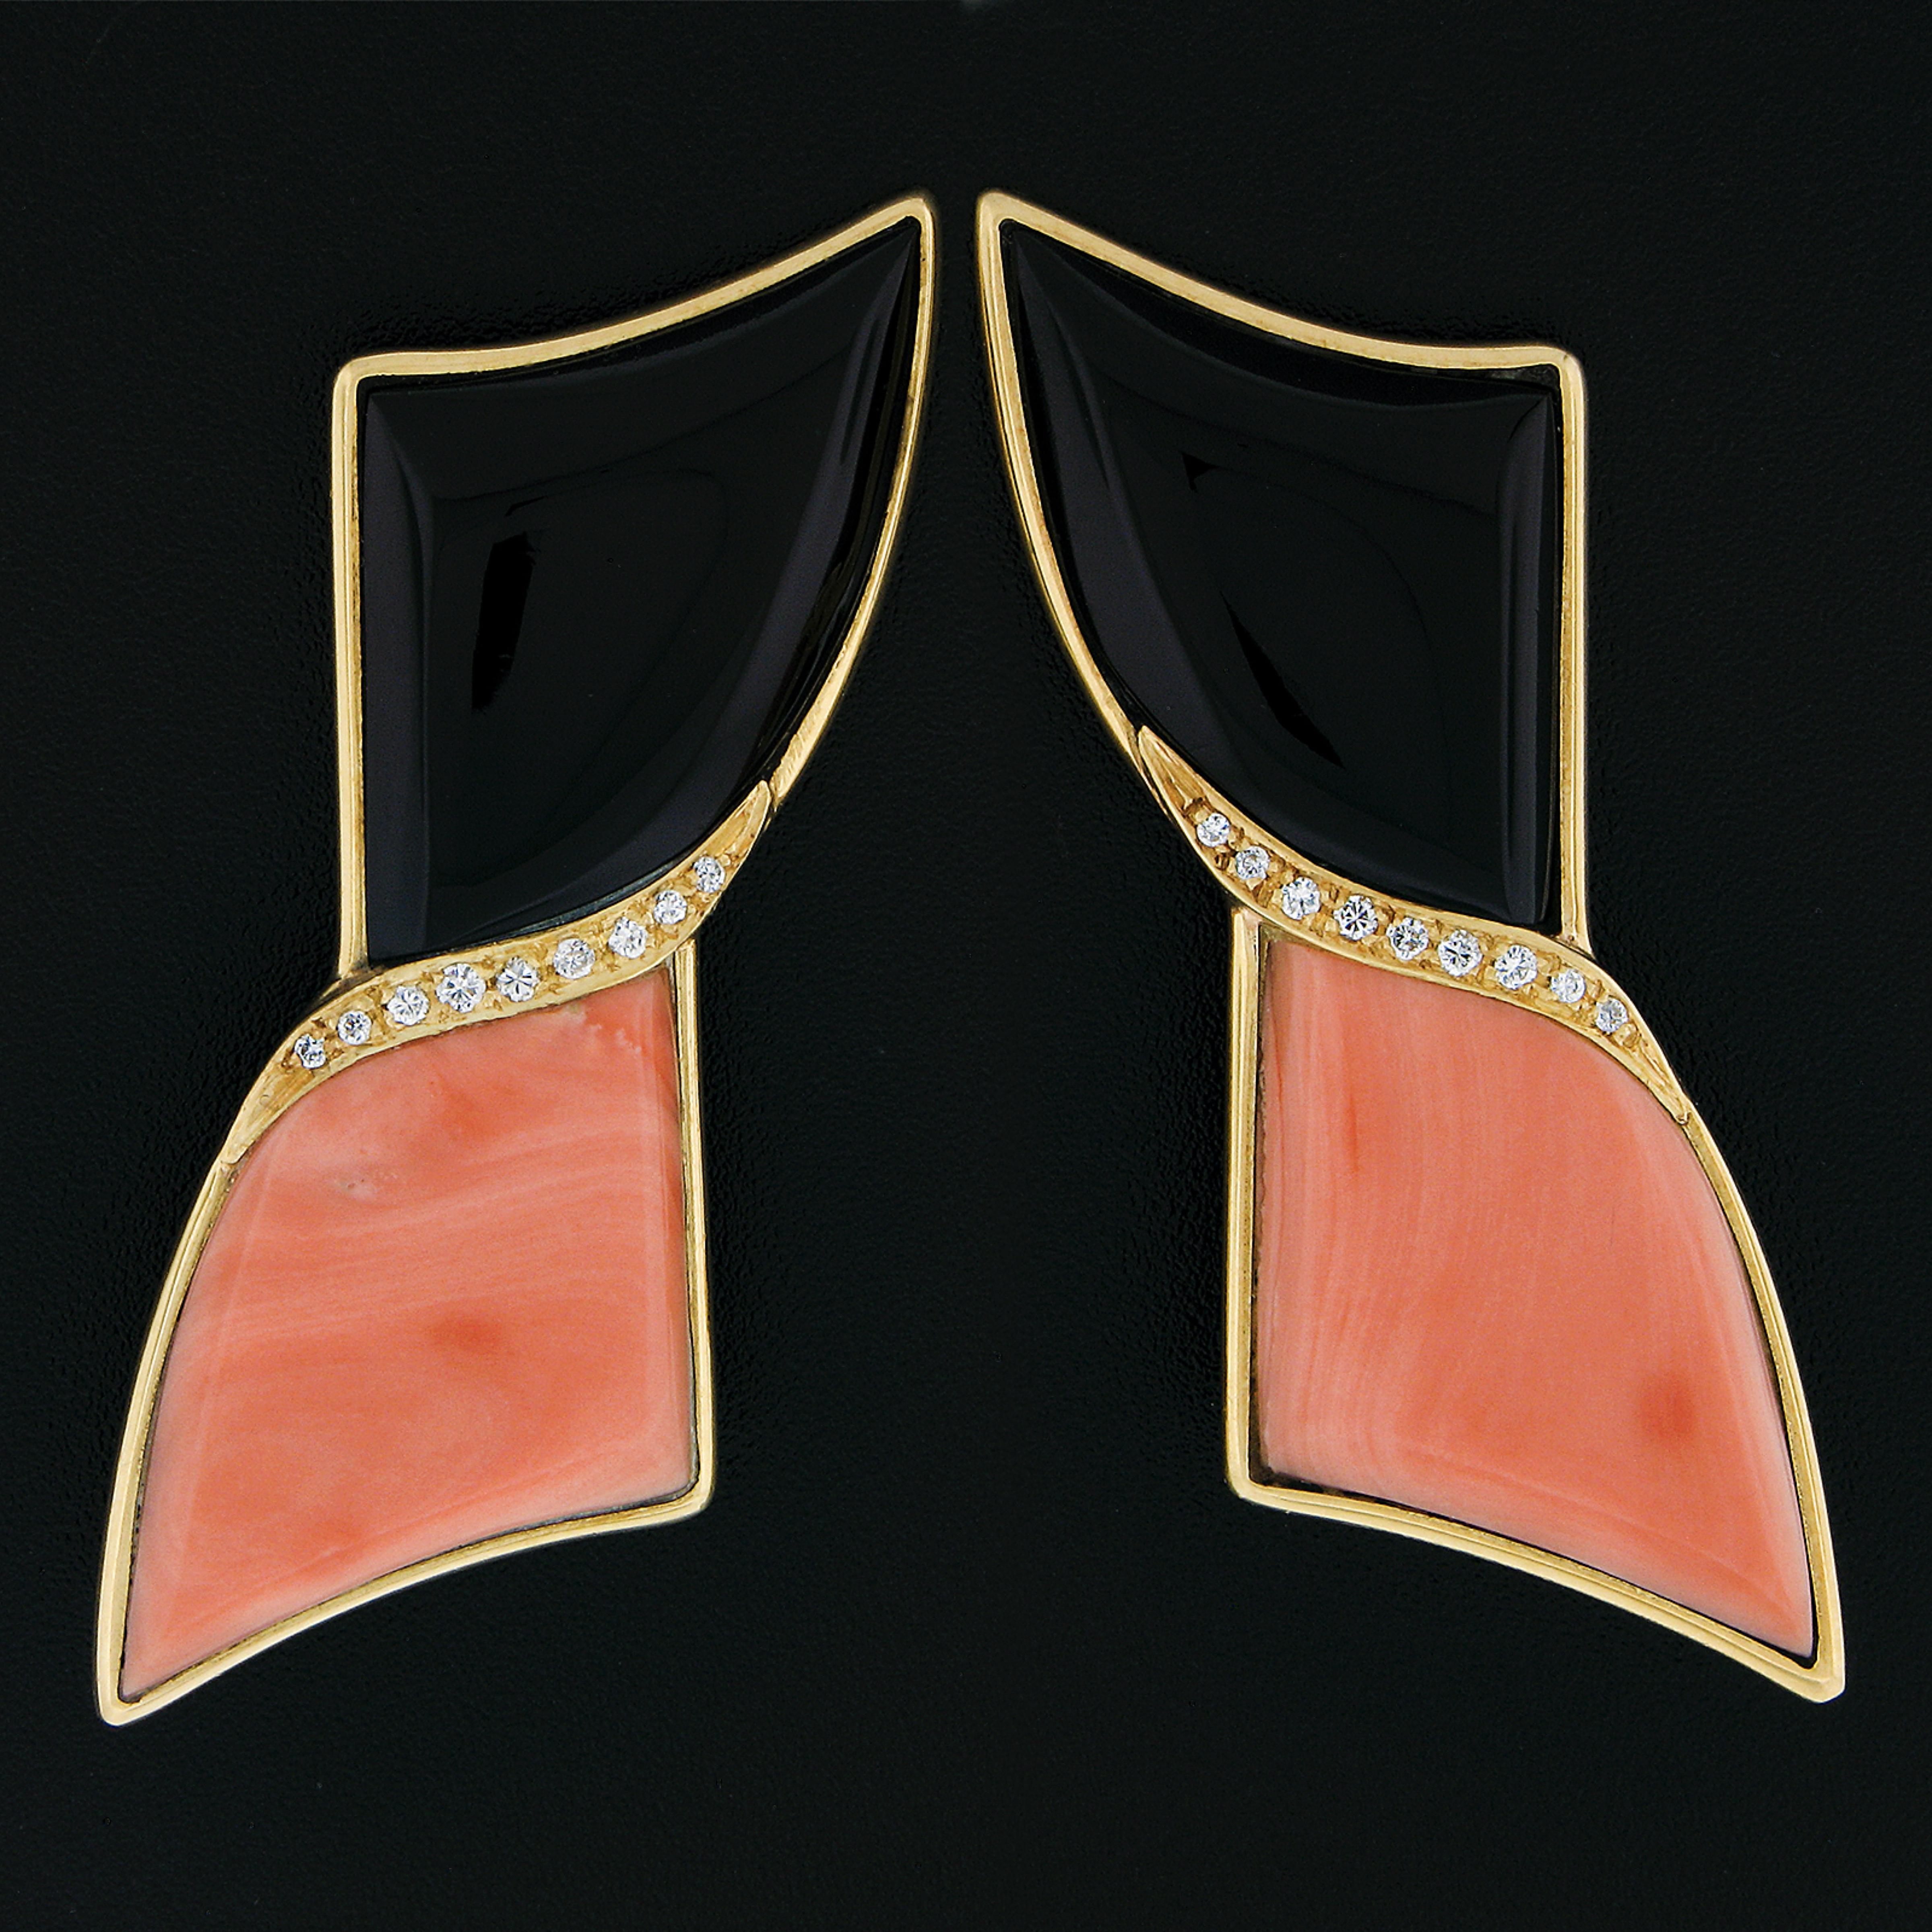 Hier haben wir ein großes und hervorragendes Paar Vintage-Ohrringe, die in massivem 18 Karat Gelbgold gefertigt sind und natürliche schwarze Onyx- und Korallensteine aufweisen, die mit hochwertigen Diamantakzenten verziert sind. Die speziell